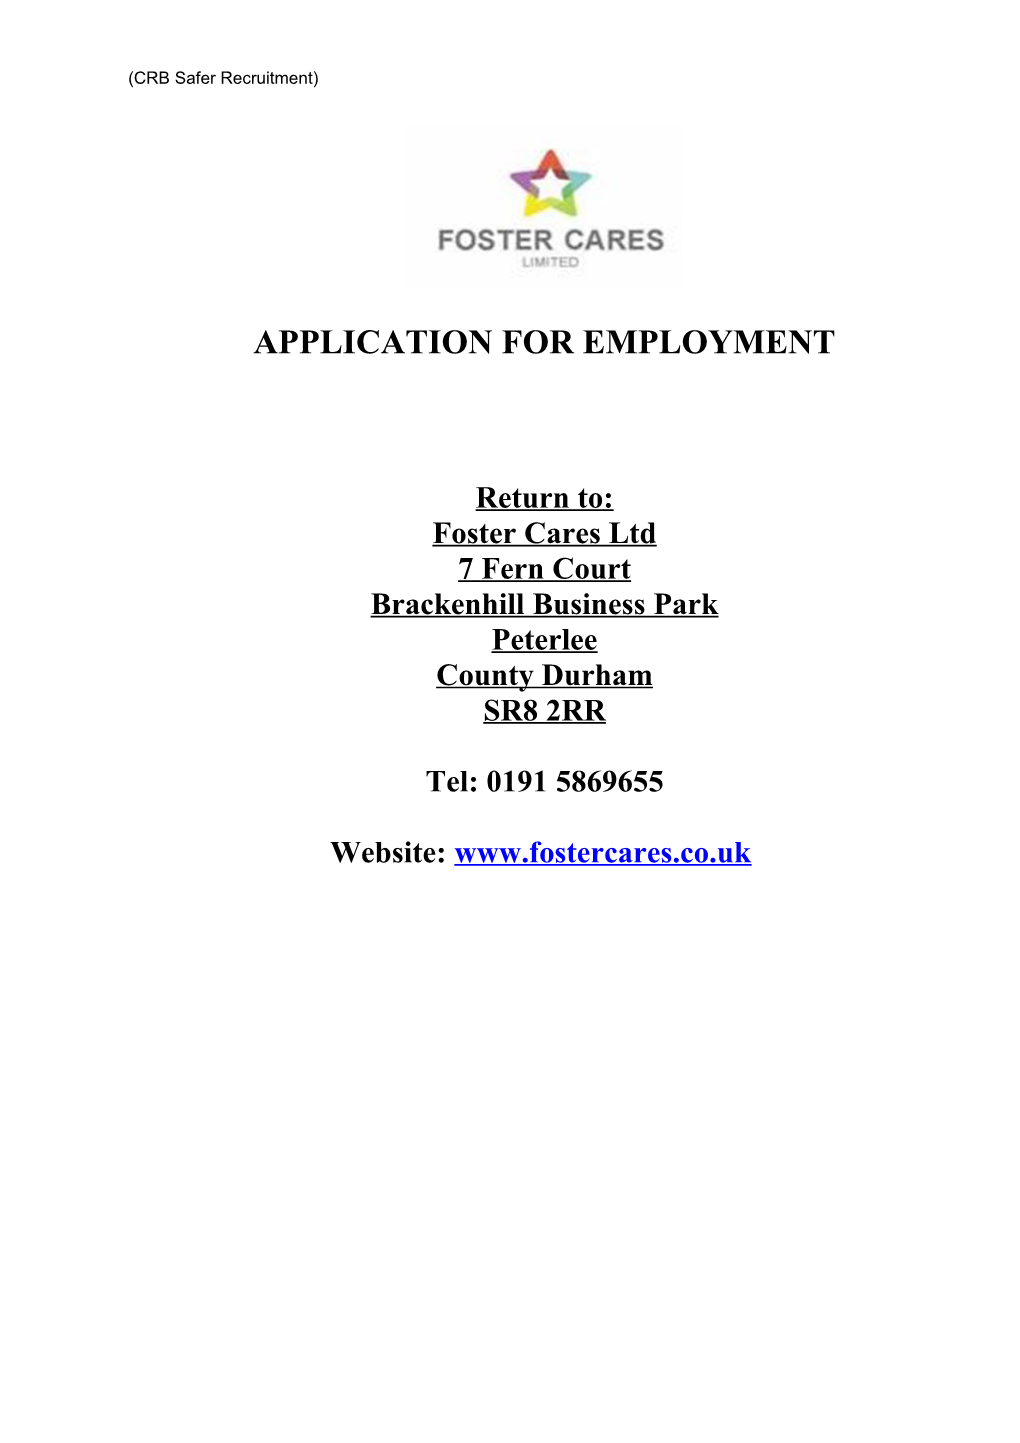 Job Application Form s24